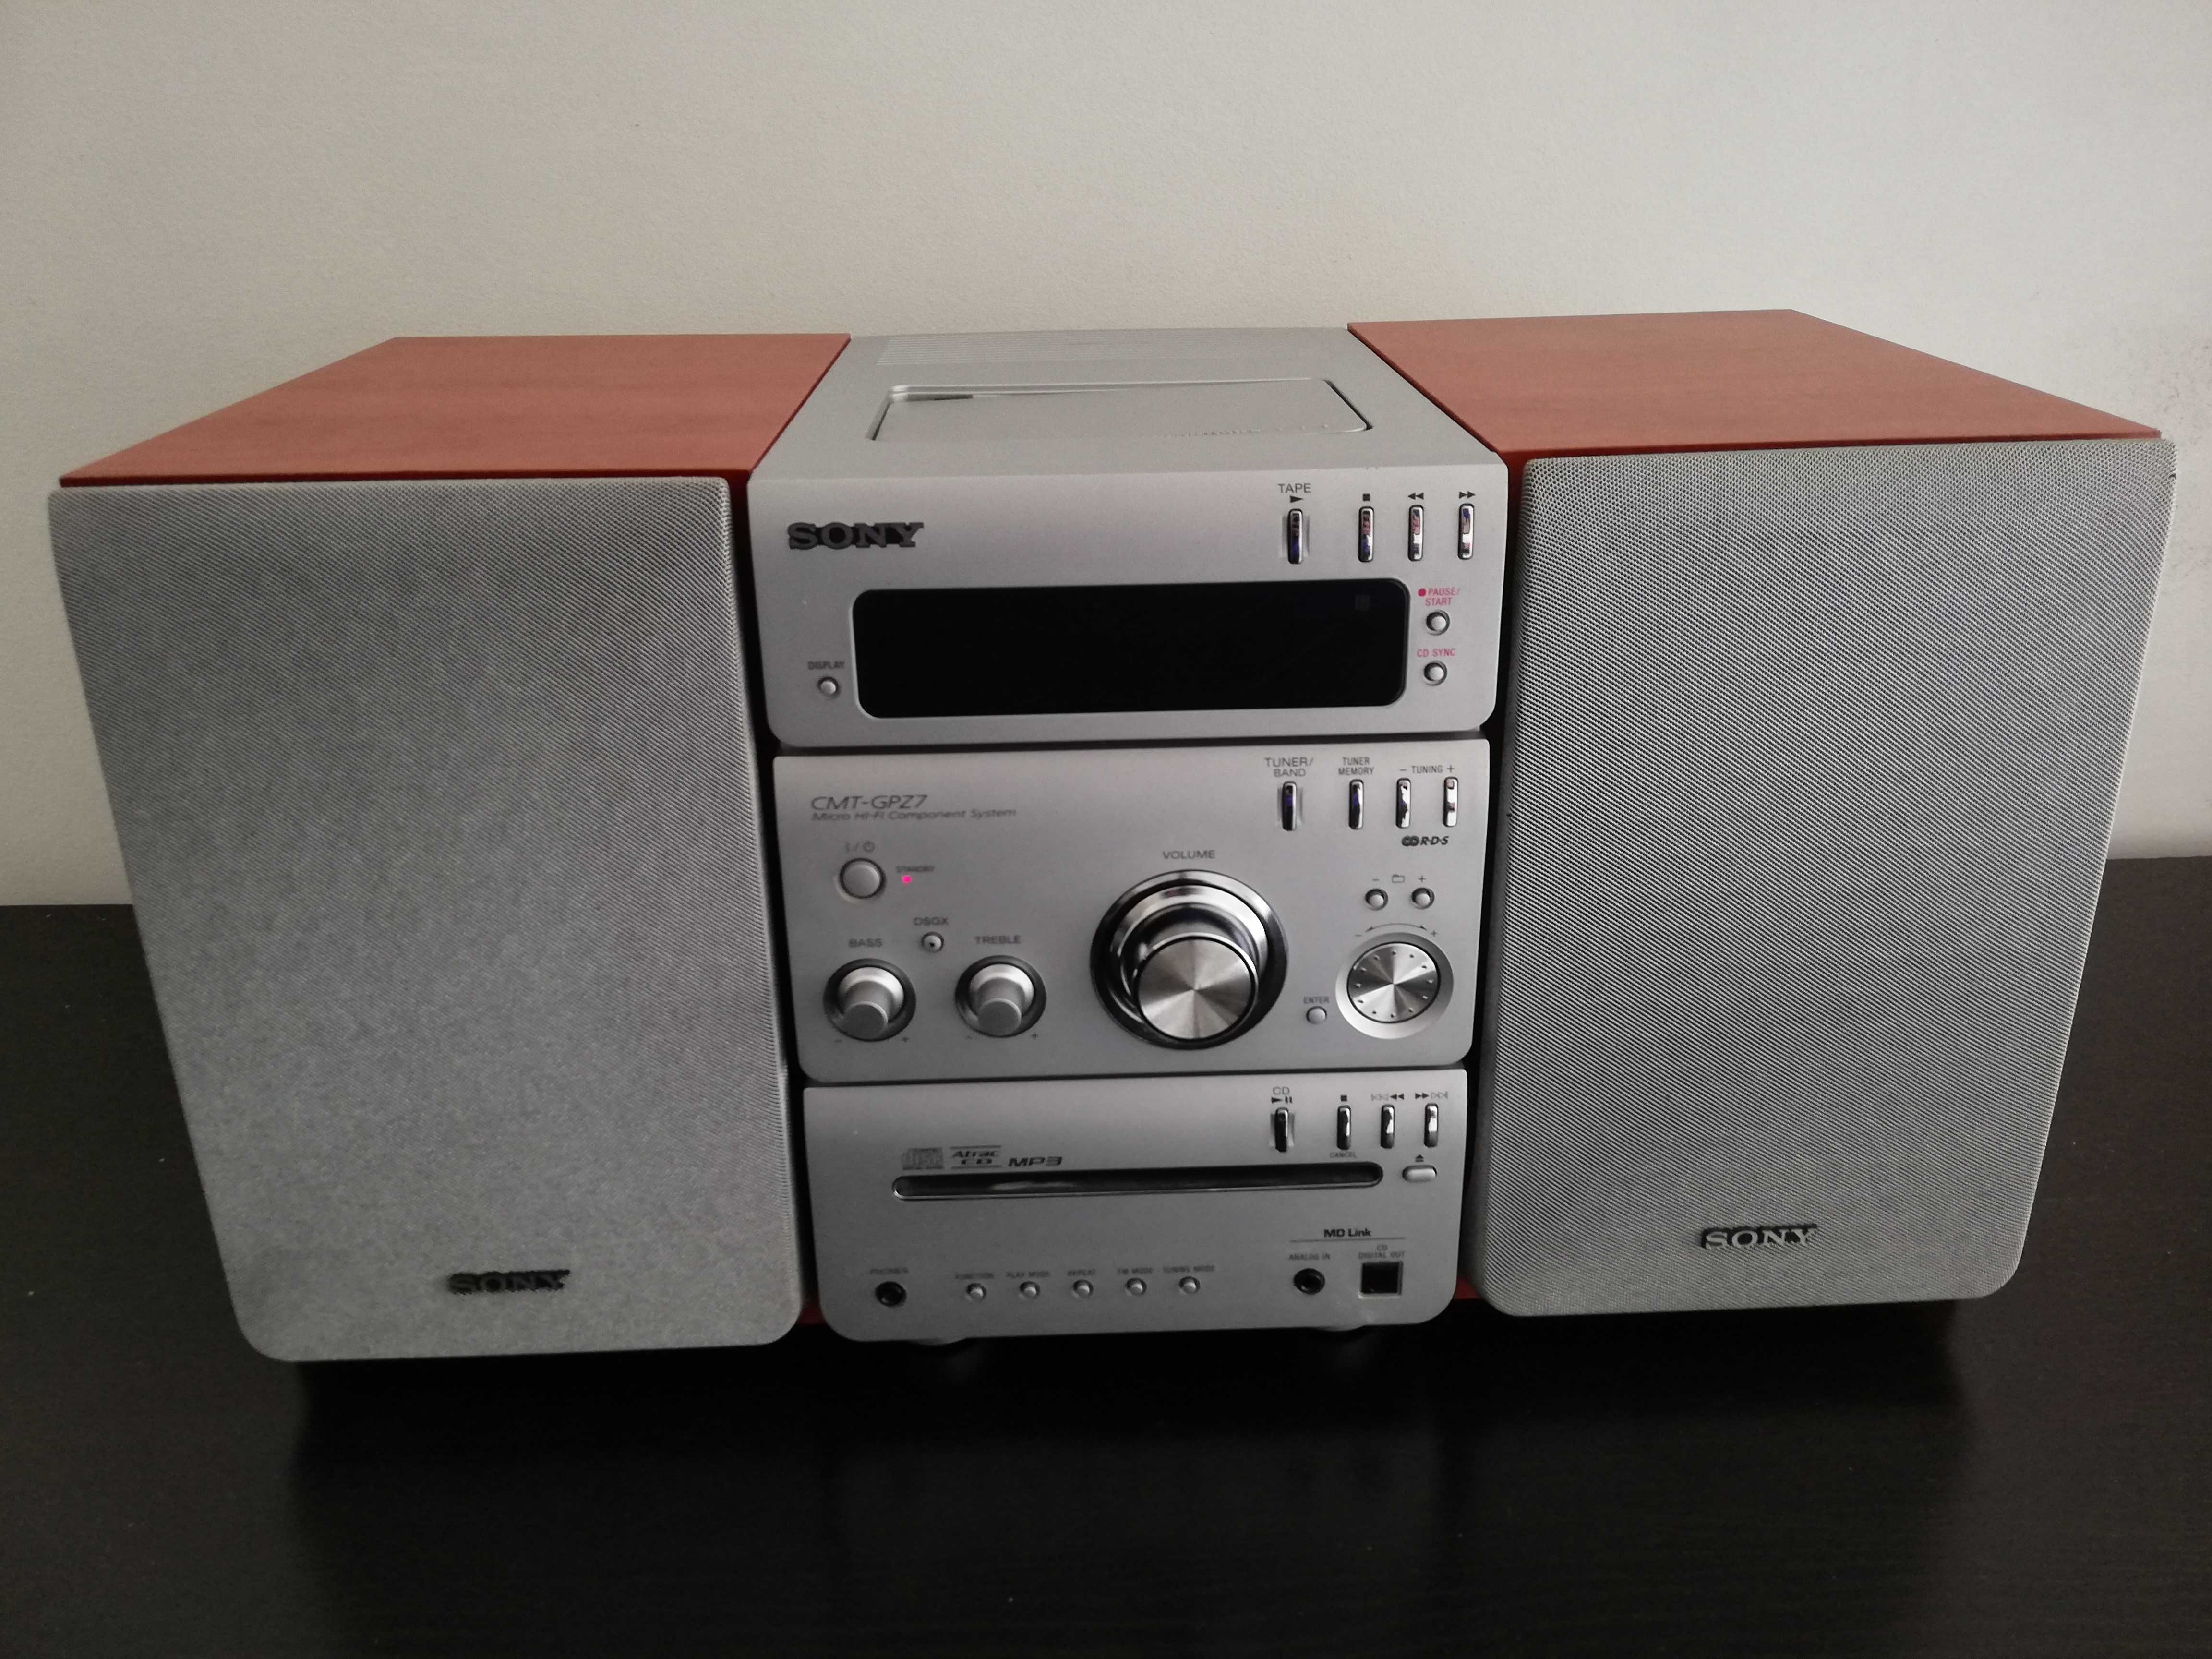 Sistema de som Sony - 3.5mm jack, rádio, leitor DVD e cassetes